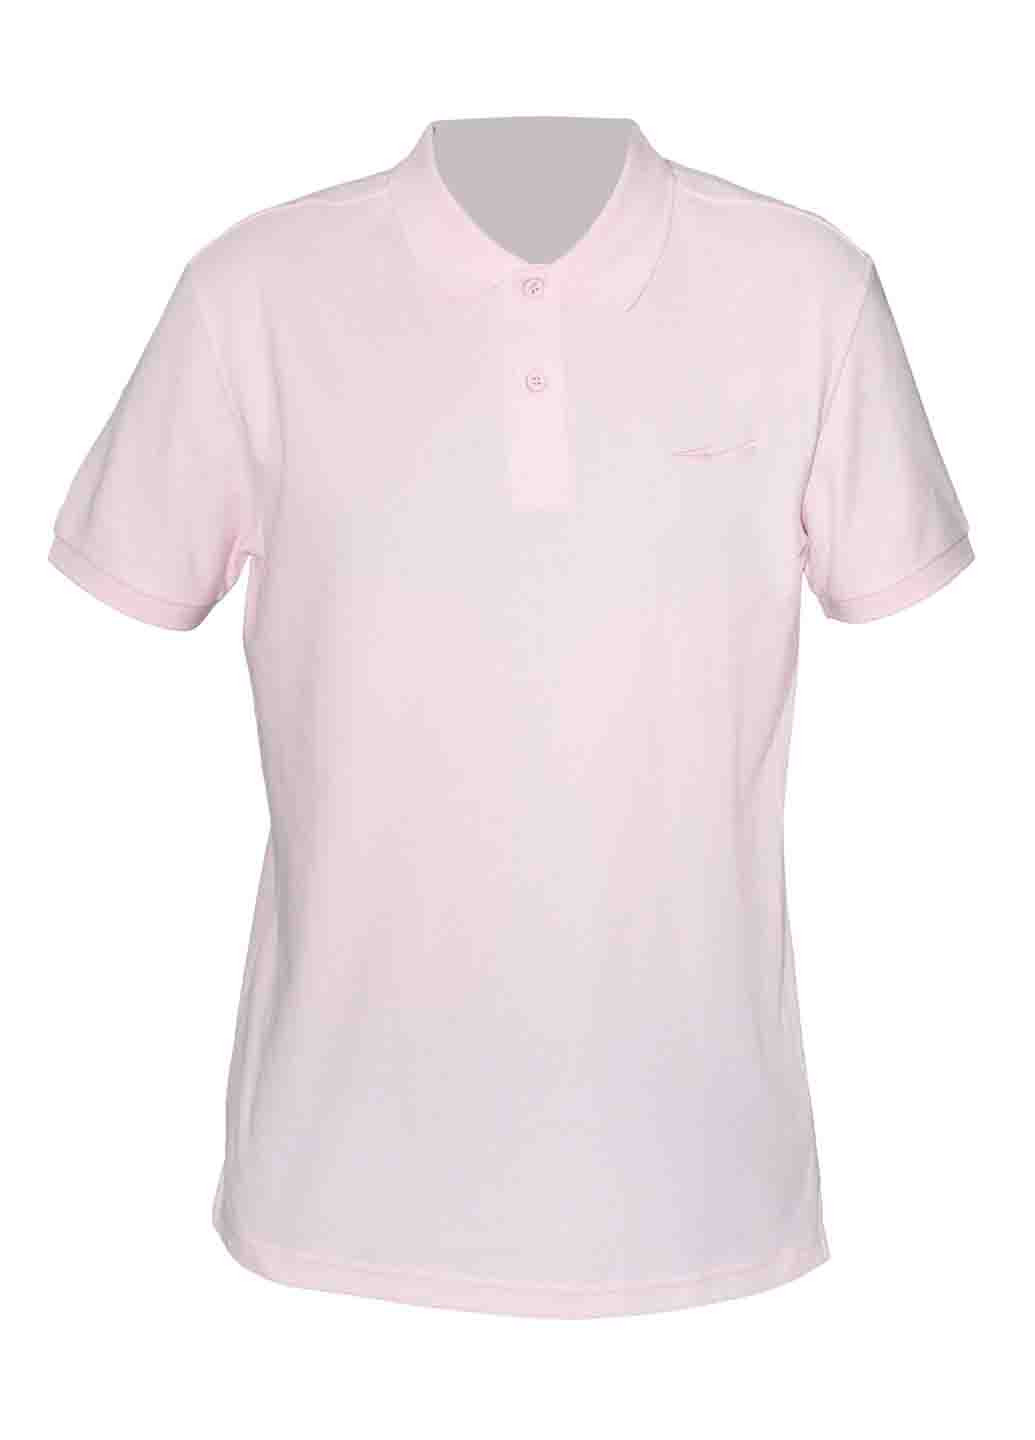 Светло-розовая женская футболка-поло Erke однотонная